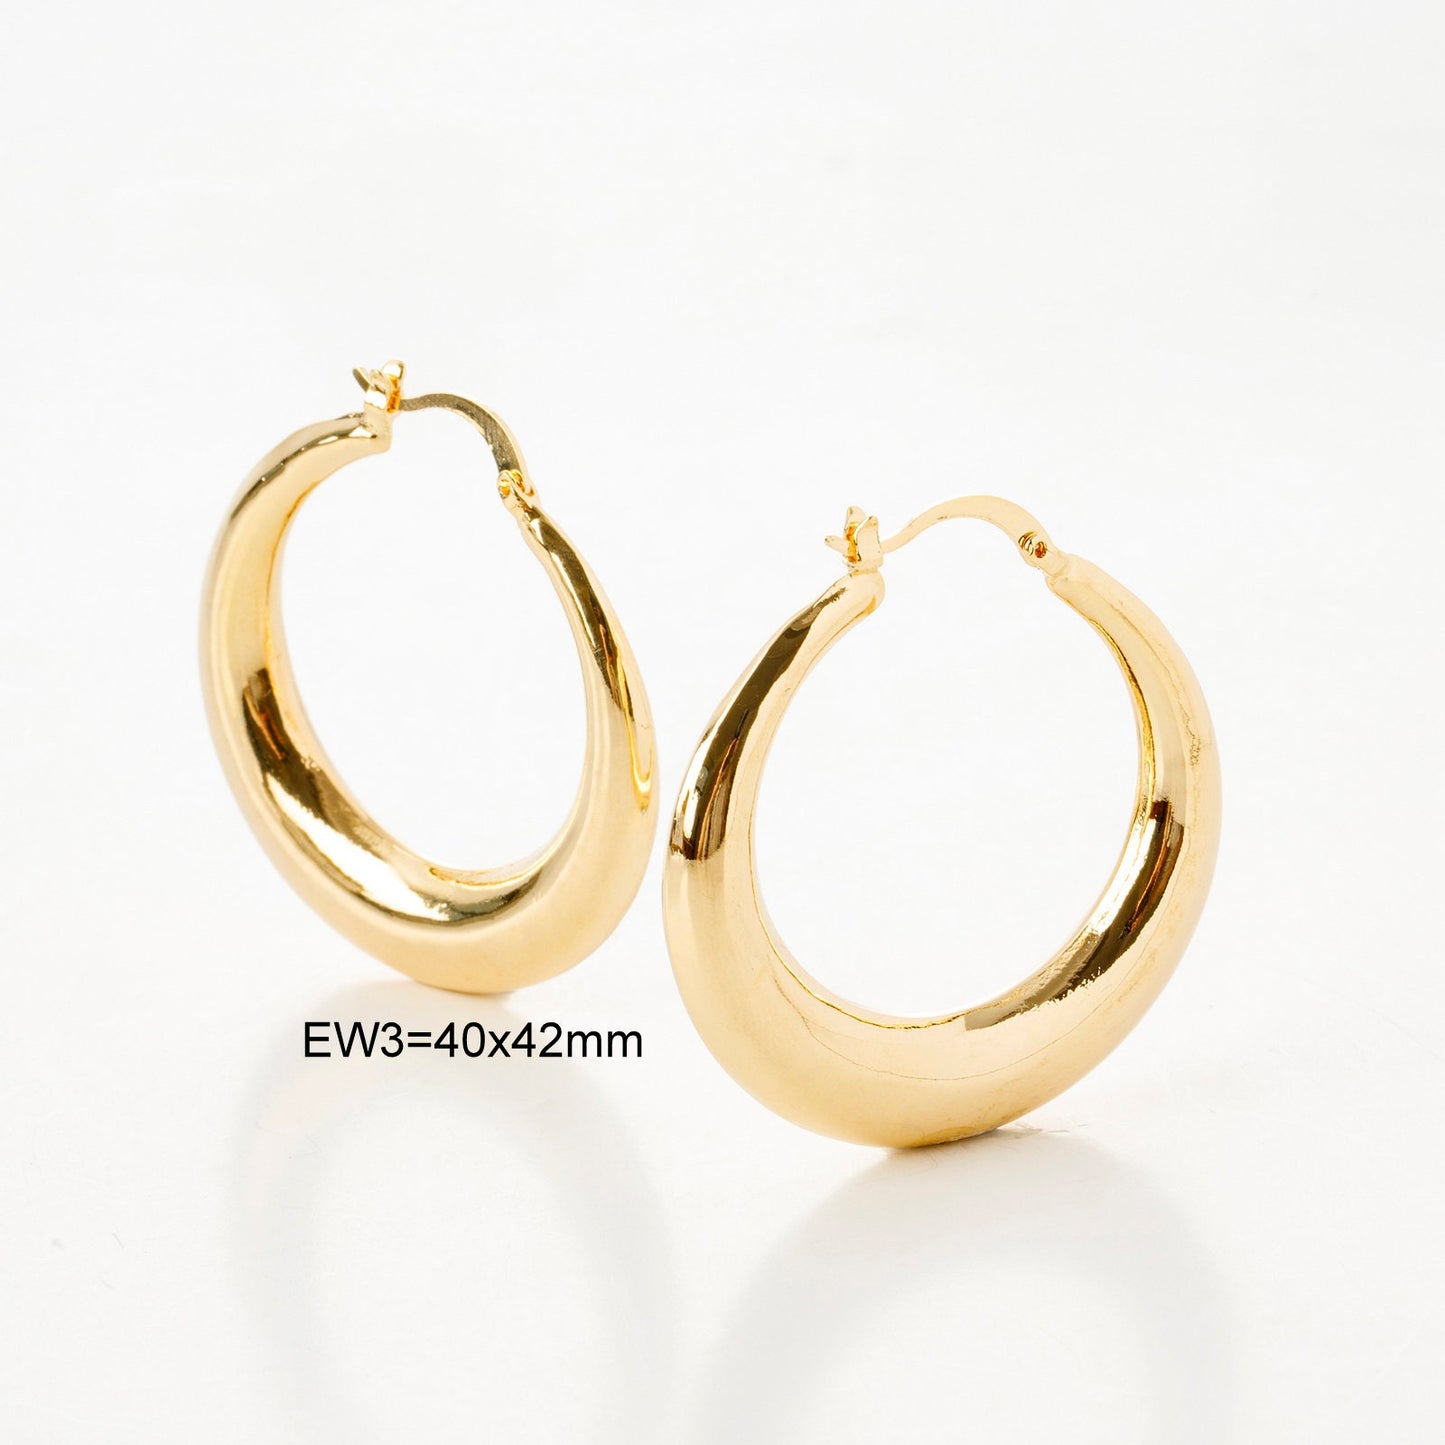 Moon Round Oval Hoop Earring Gold Filled EP 18K , Jewelry Making 5 designs Hoop Earrings